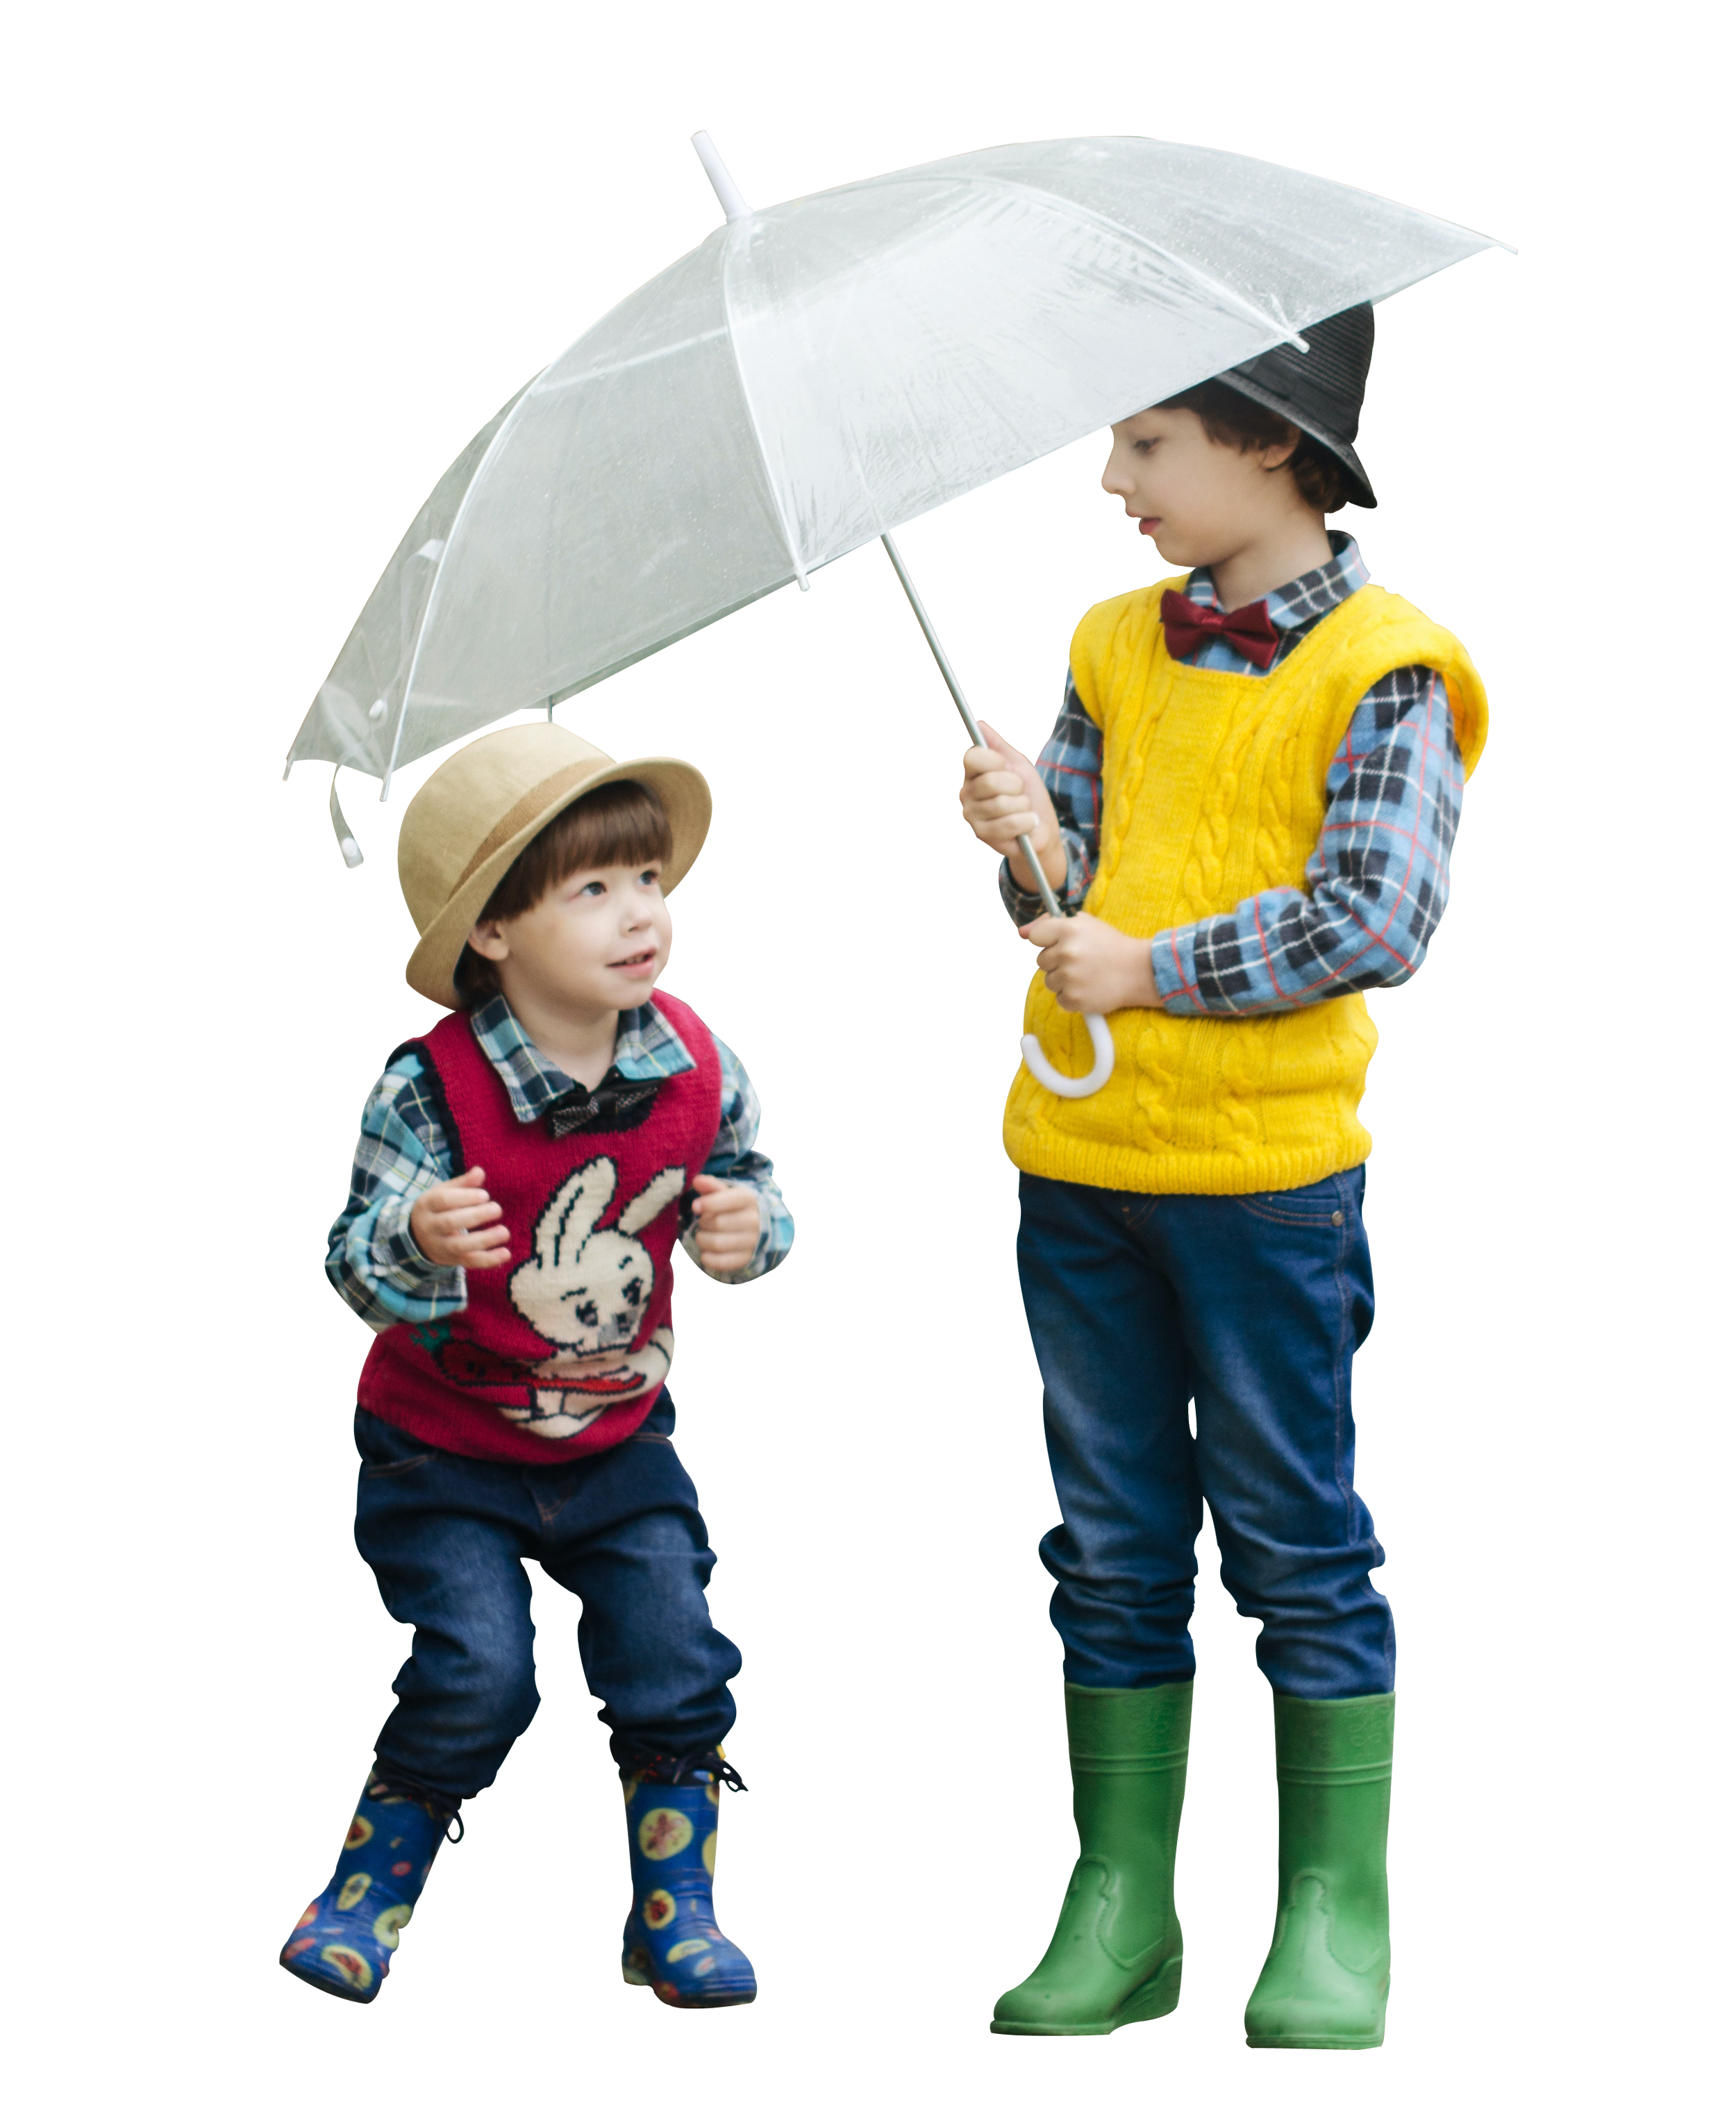 Зонтик для детей. Дети под зонтом. Мальчик с зонтом. Мальчик под зонтиком. Дети под зонтиком